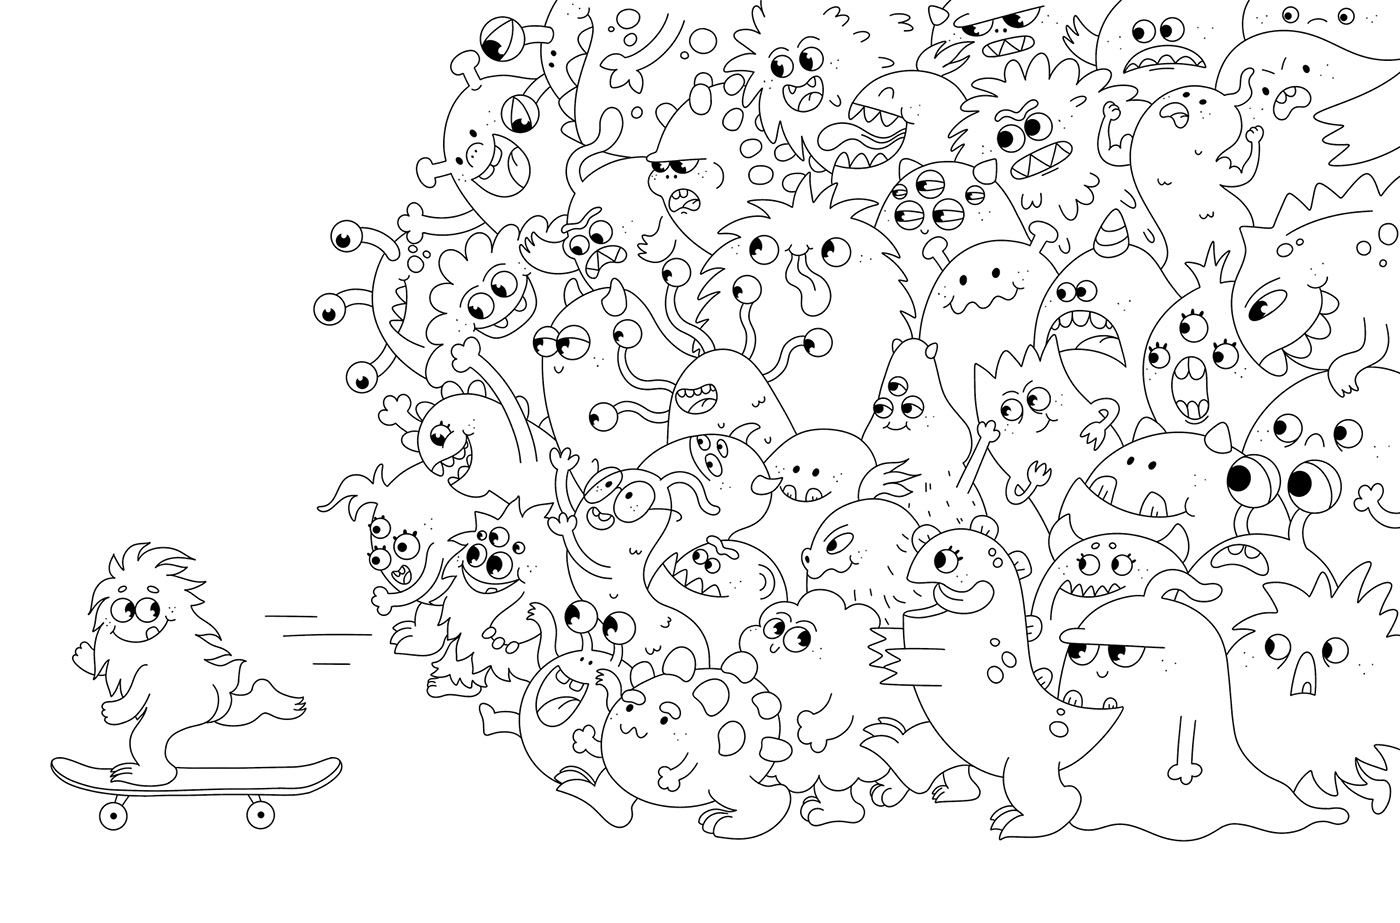 animals illustration cartoon Character design  coloring book digital illustration doodle children illustration doodles sketch